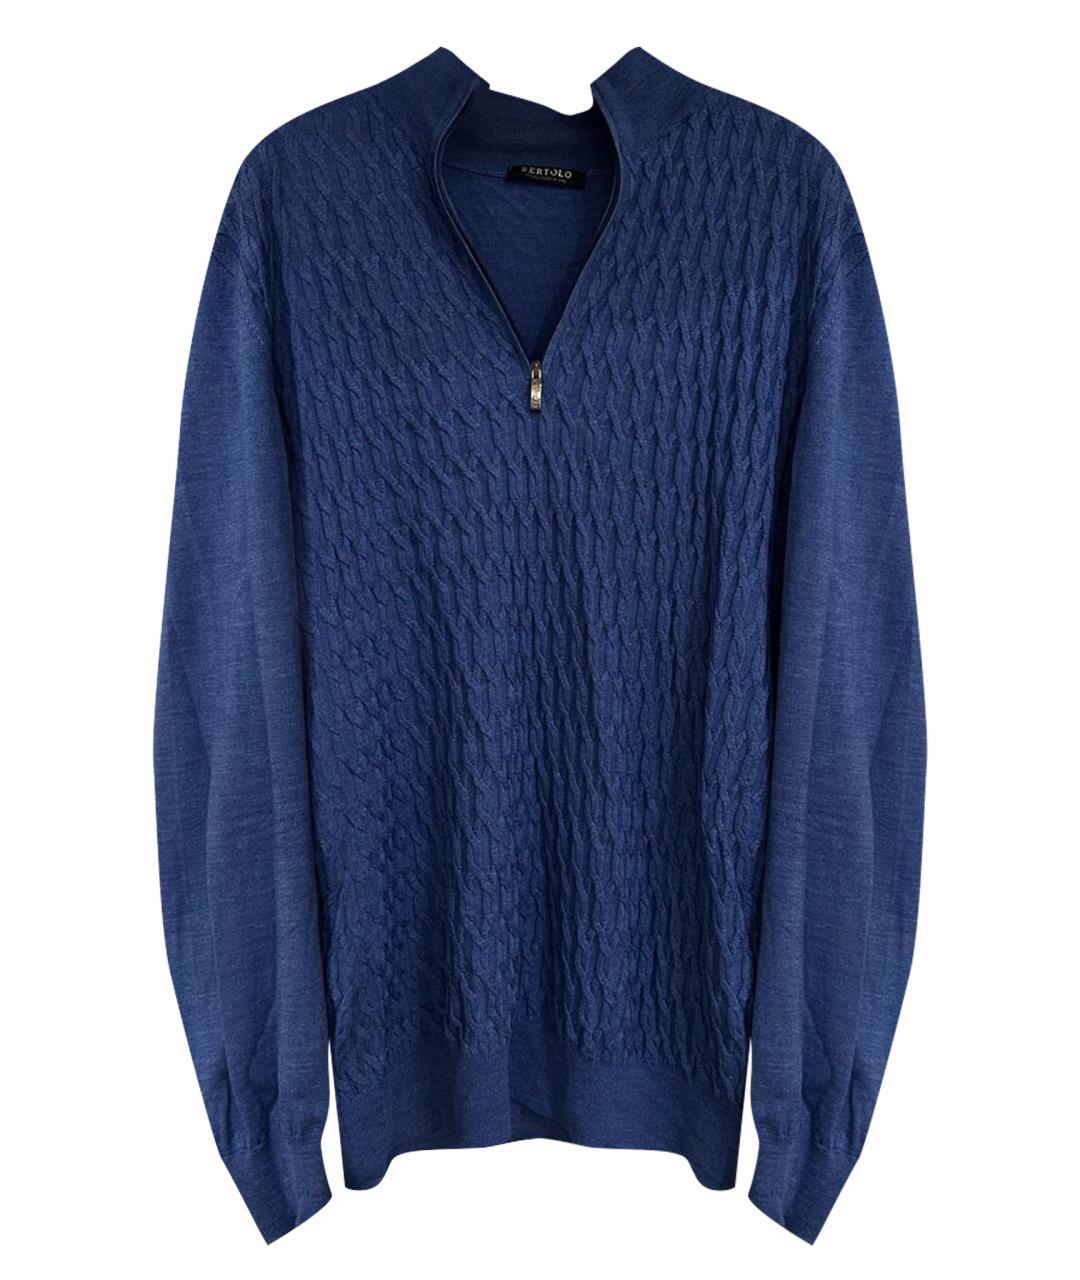 BERTOLO LUXURY MENSWEAR Синий шерстяной джемпер / свитер, фото 1